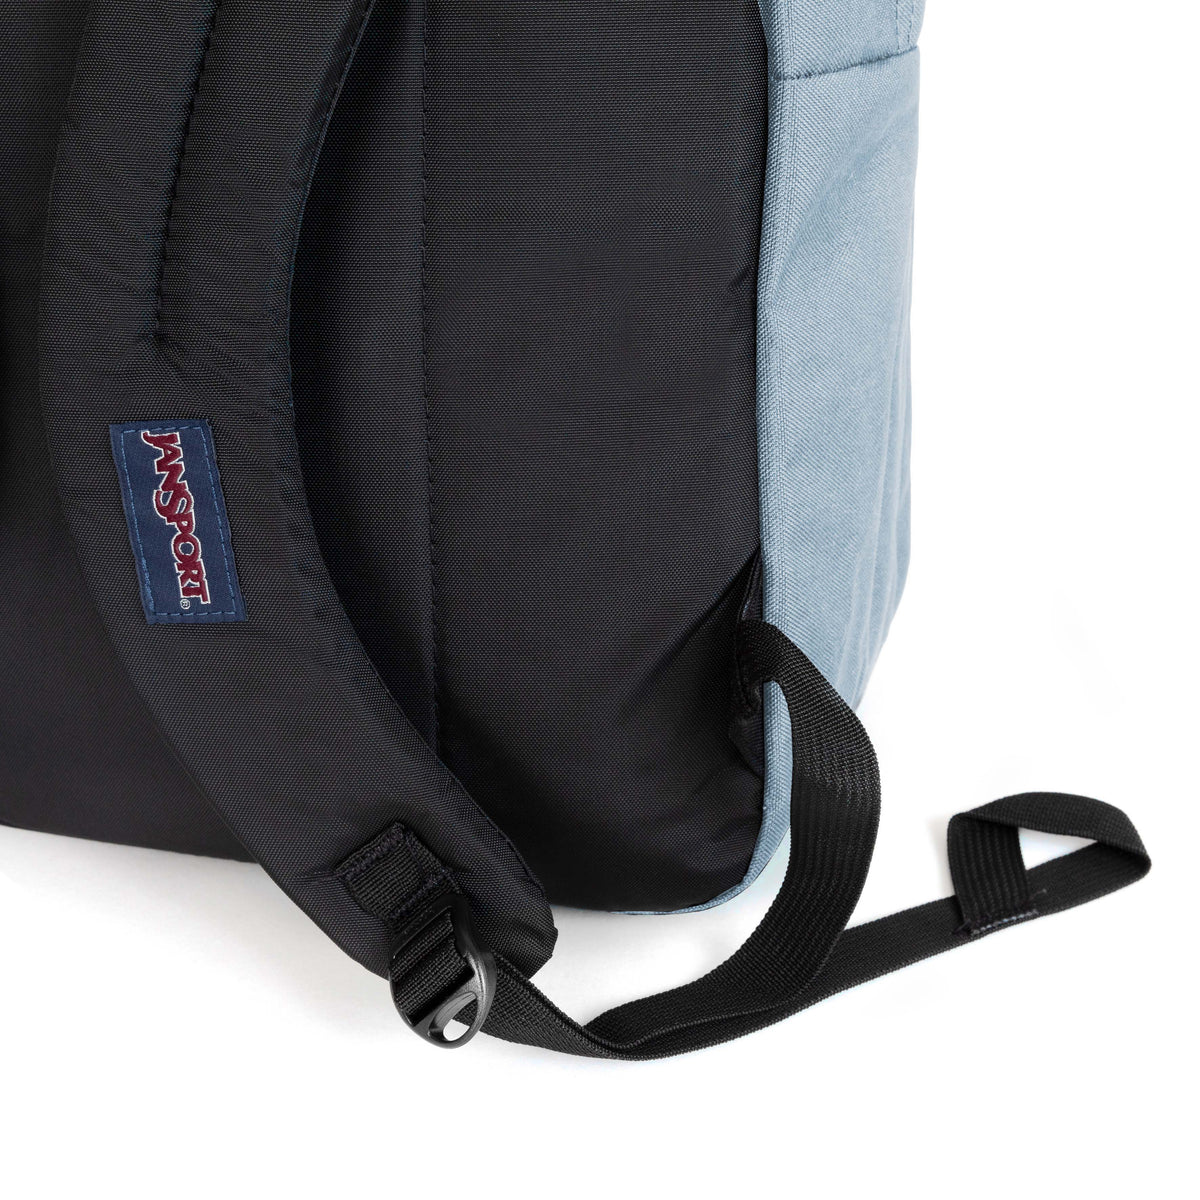 Jansport Big Student Backpack - Blue Dusk